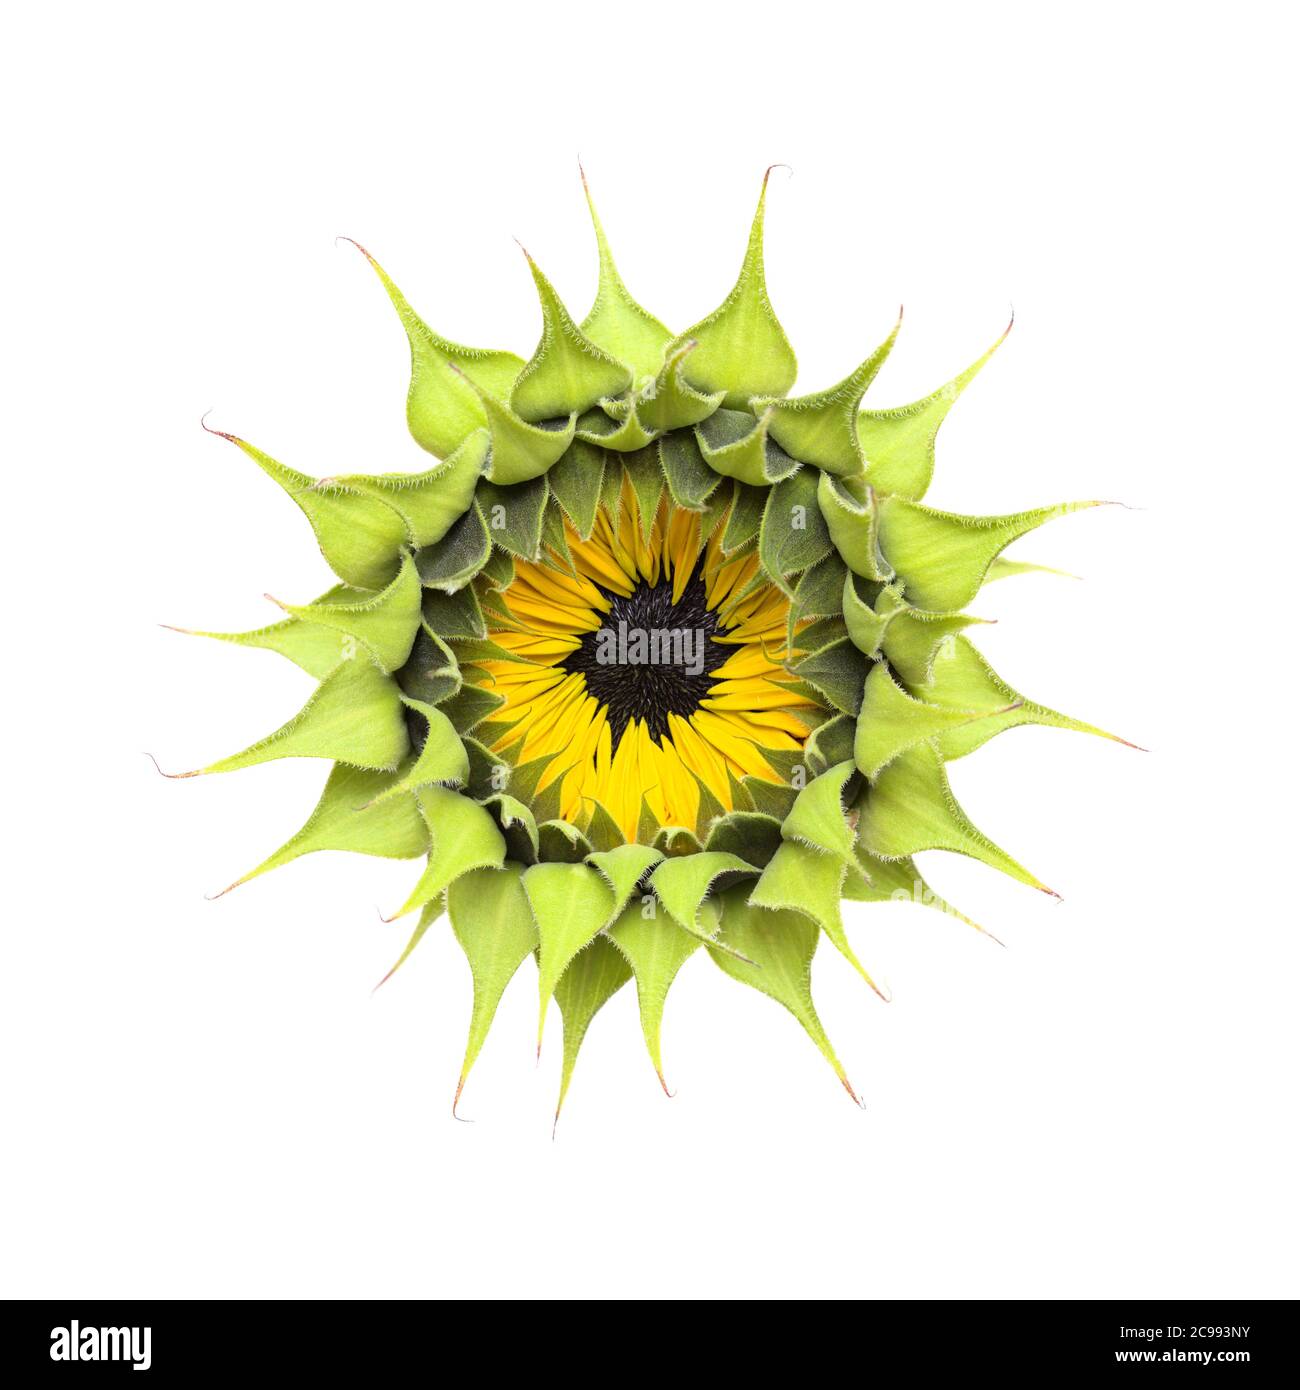 Unopened sunflower isolated on plain background Stock Photo